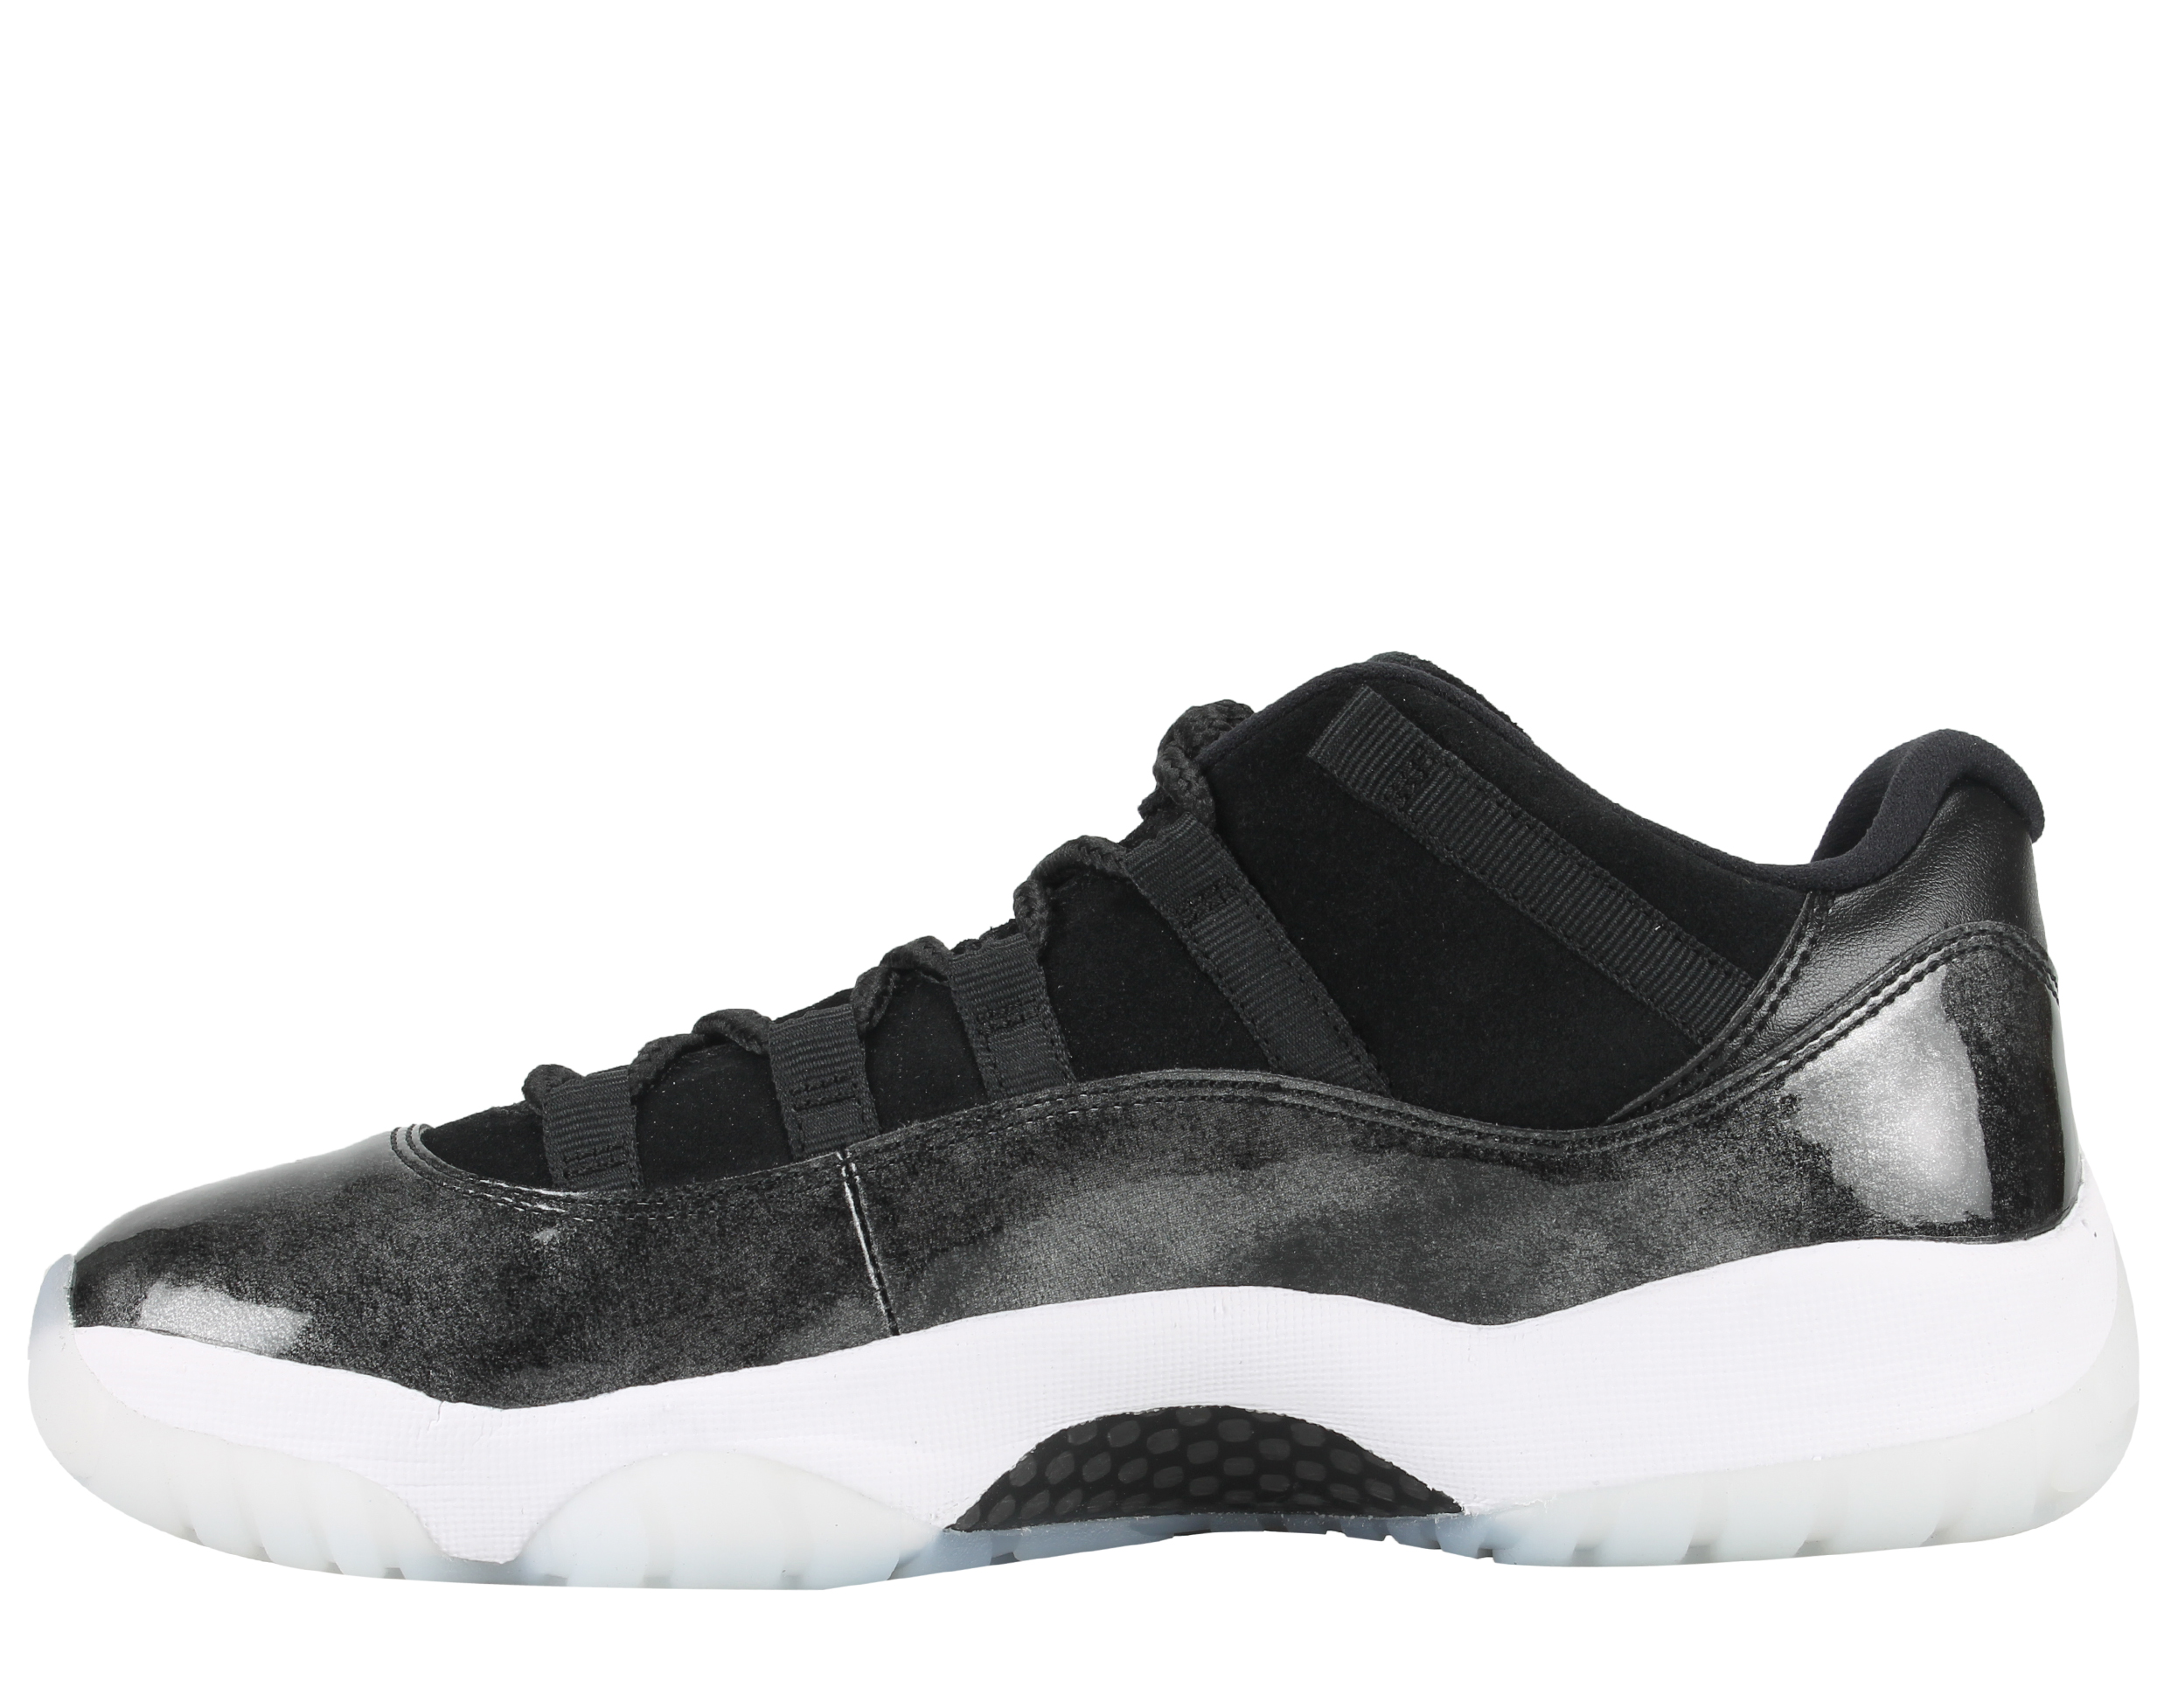 Nike Mens Air Jordan 11 Retro Low "Barons" Black/White-Silver 528895-010 - image 3 of 6